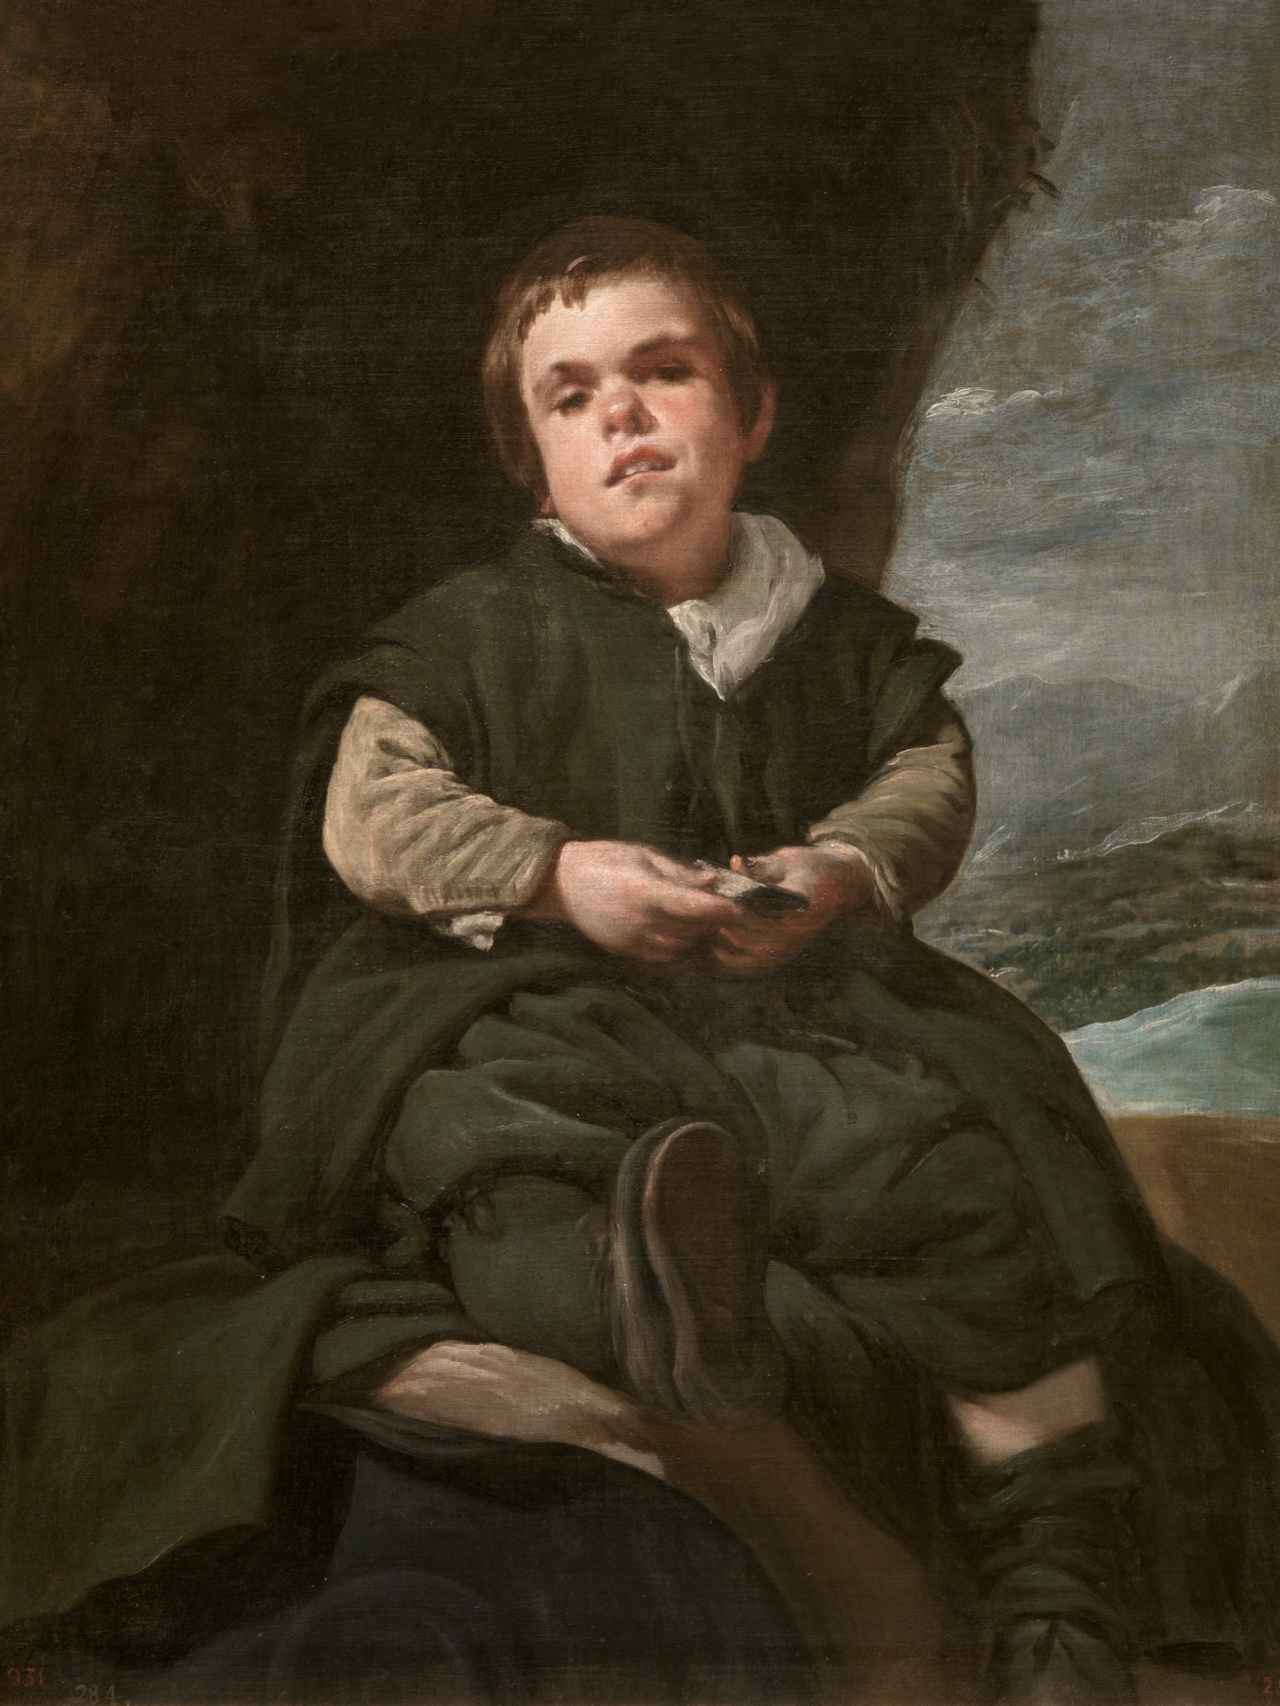 Retrato de Francisco Lezcano, el Niño de Vallecas, óleo de Velázquez fechado entre 1635 y 1645, de cuya cartela se ha retirado el término “enanismo”.